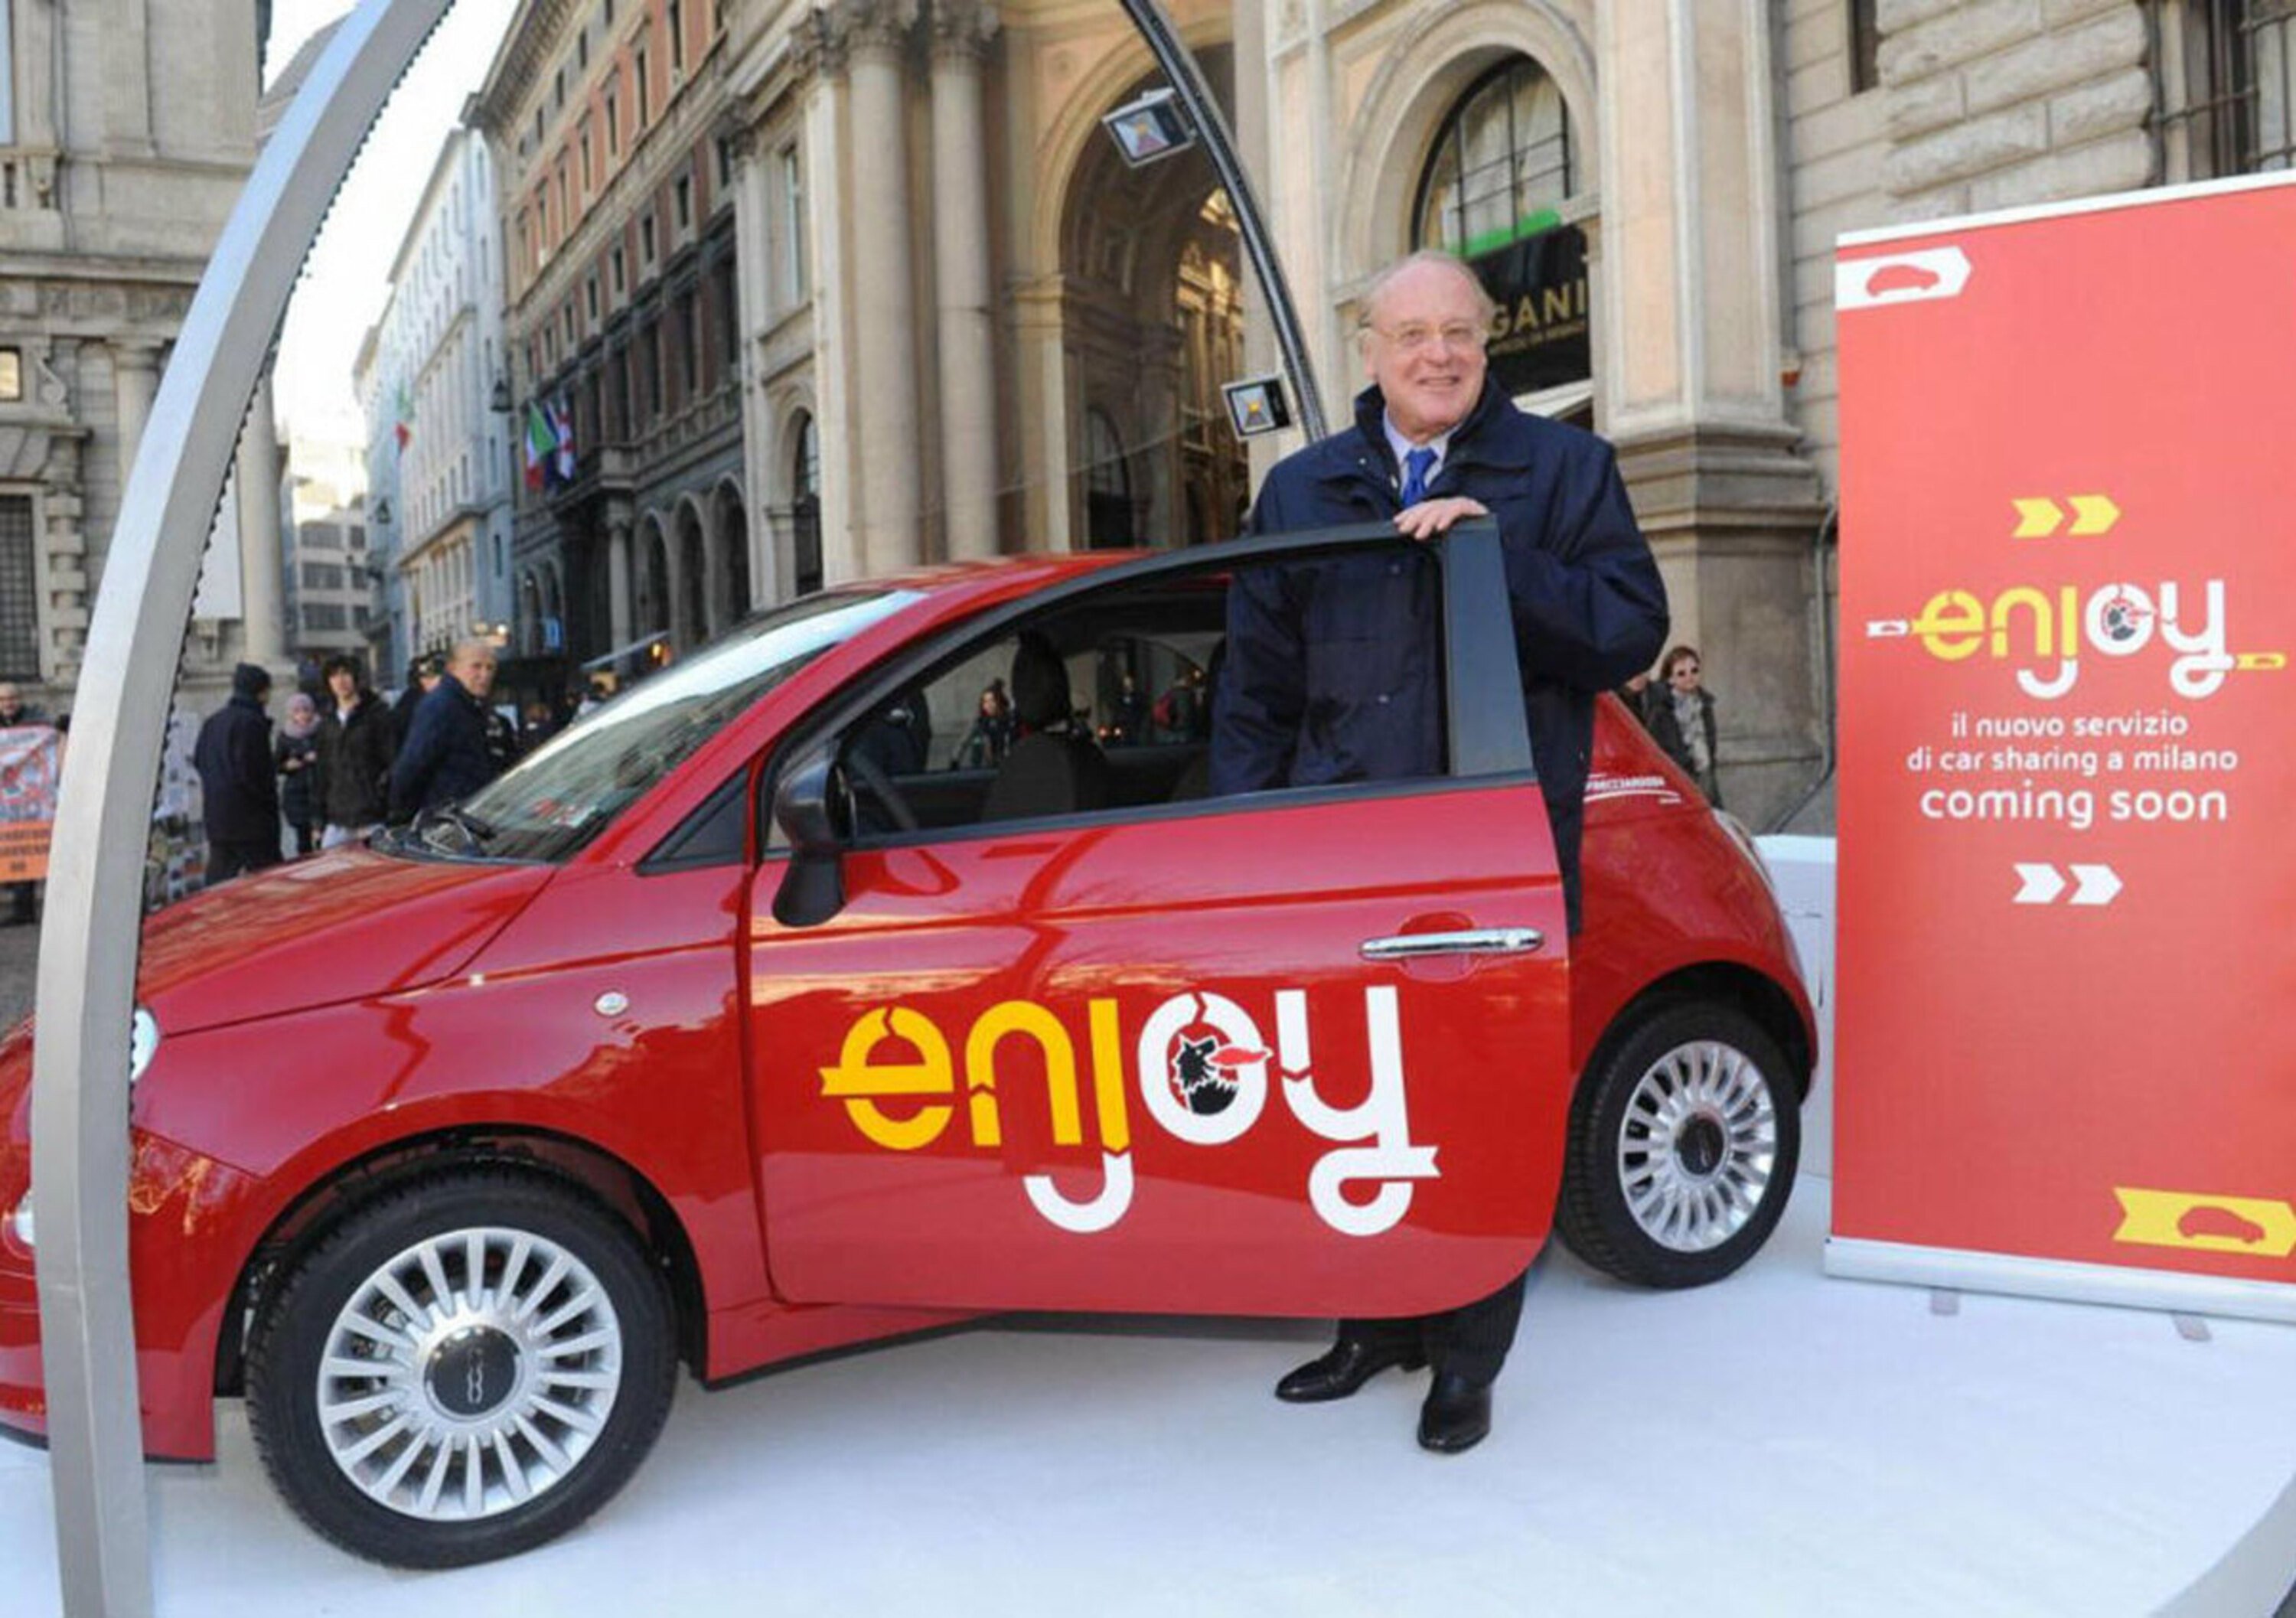 Eni: a Milano in arrivo Enjoy, il nuovo car sharing con la Fiat 500